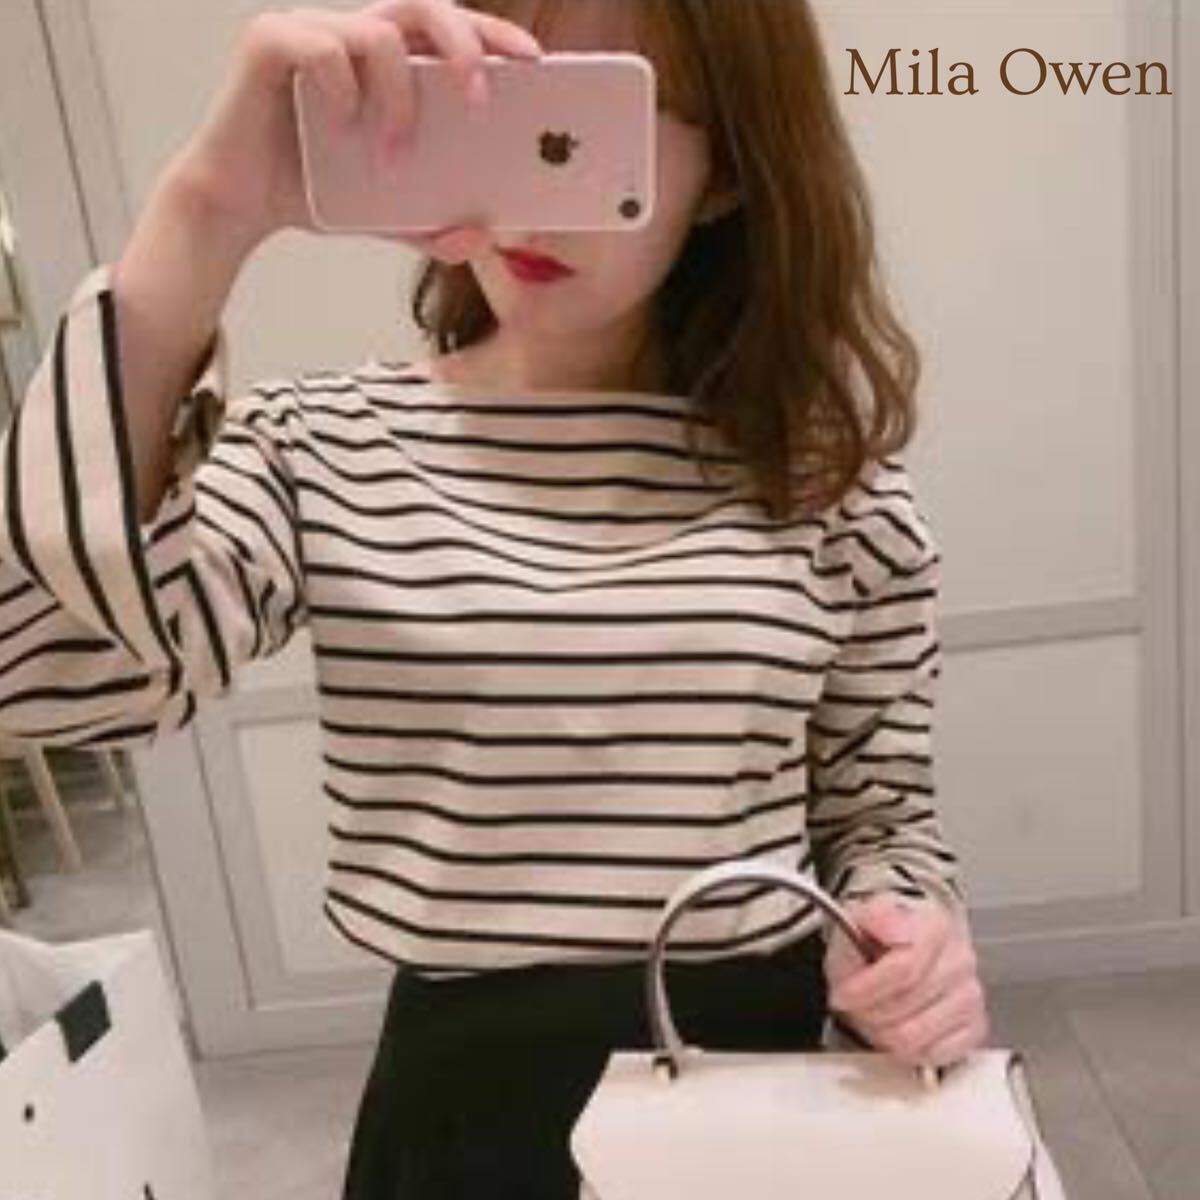 Mila Owen Mira o-wen длинный рукав окантовка рисунок cut and sewn хлопок tops всесезонный 1 (M) женский A5409